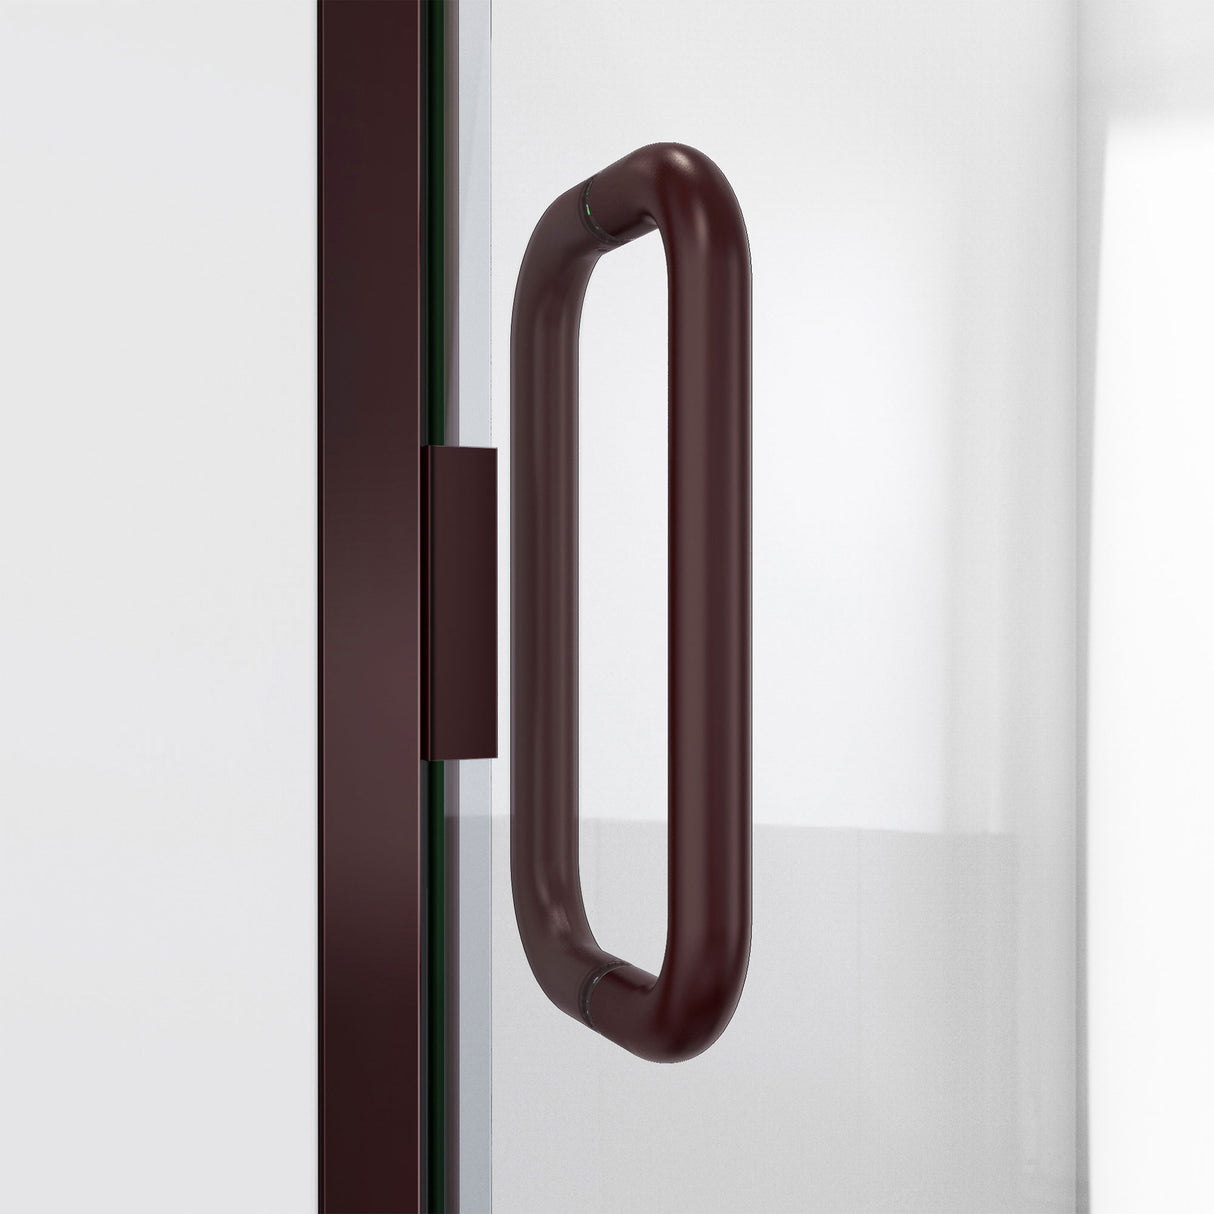 DreamLine Alliance Swing 30 in. W x 72 5/8 in. H Semi-Frameless Swing Shower Door in Oil Rubbed Bronze and Clear Glass